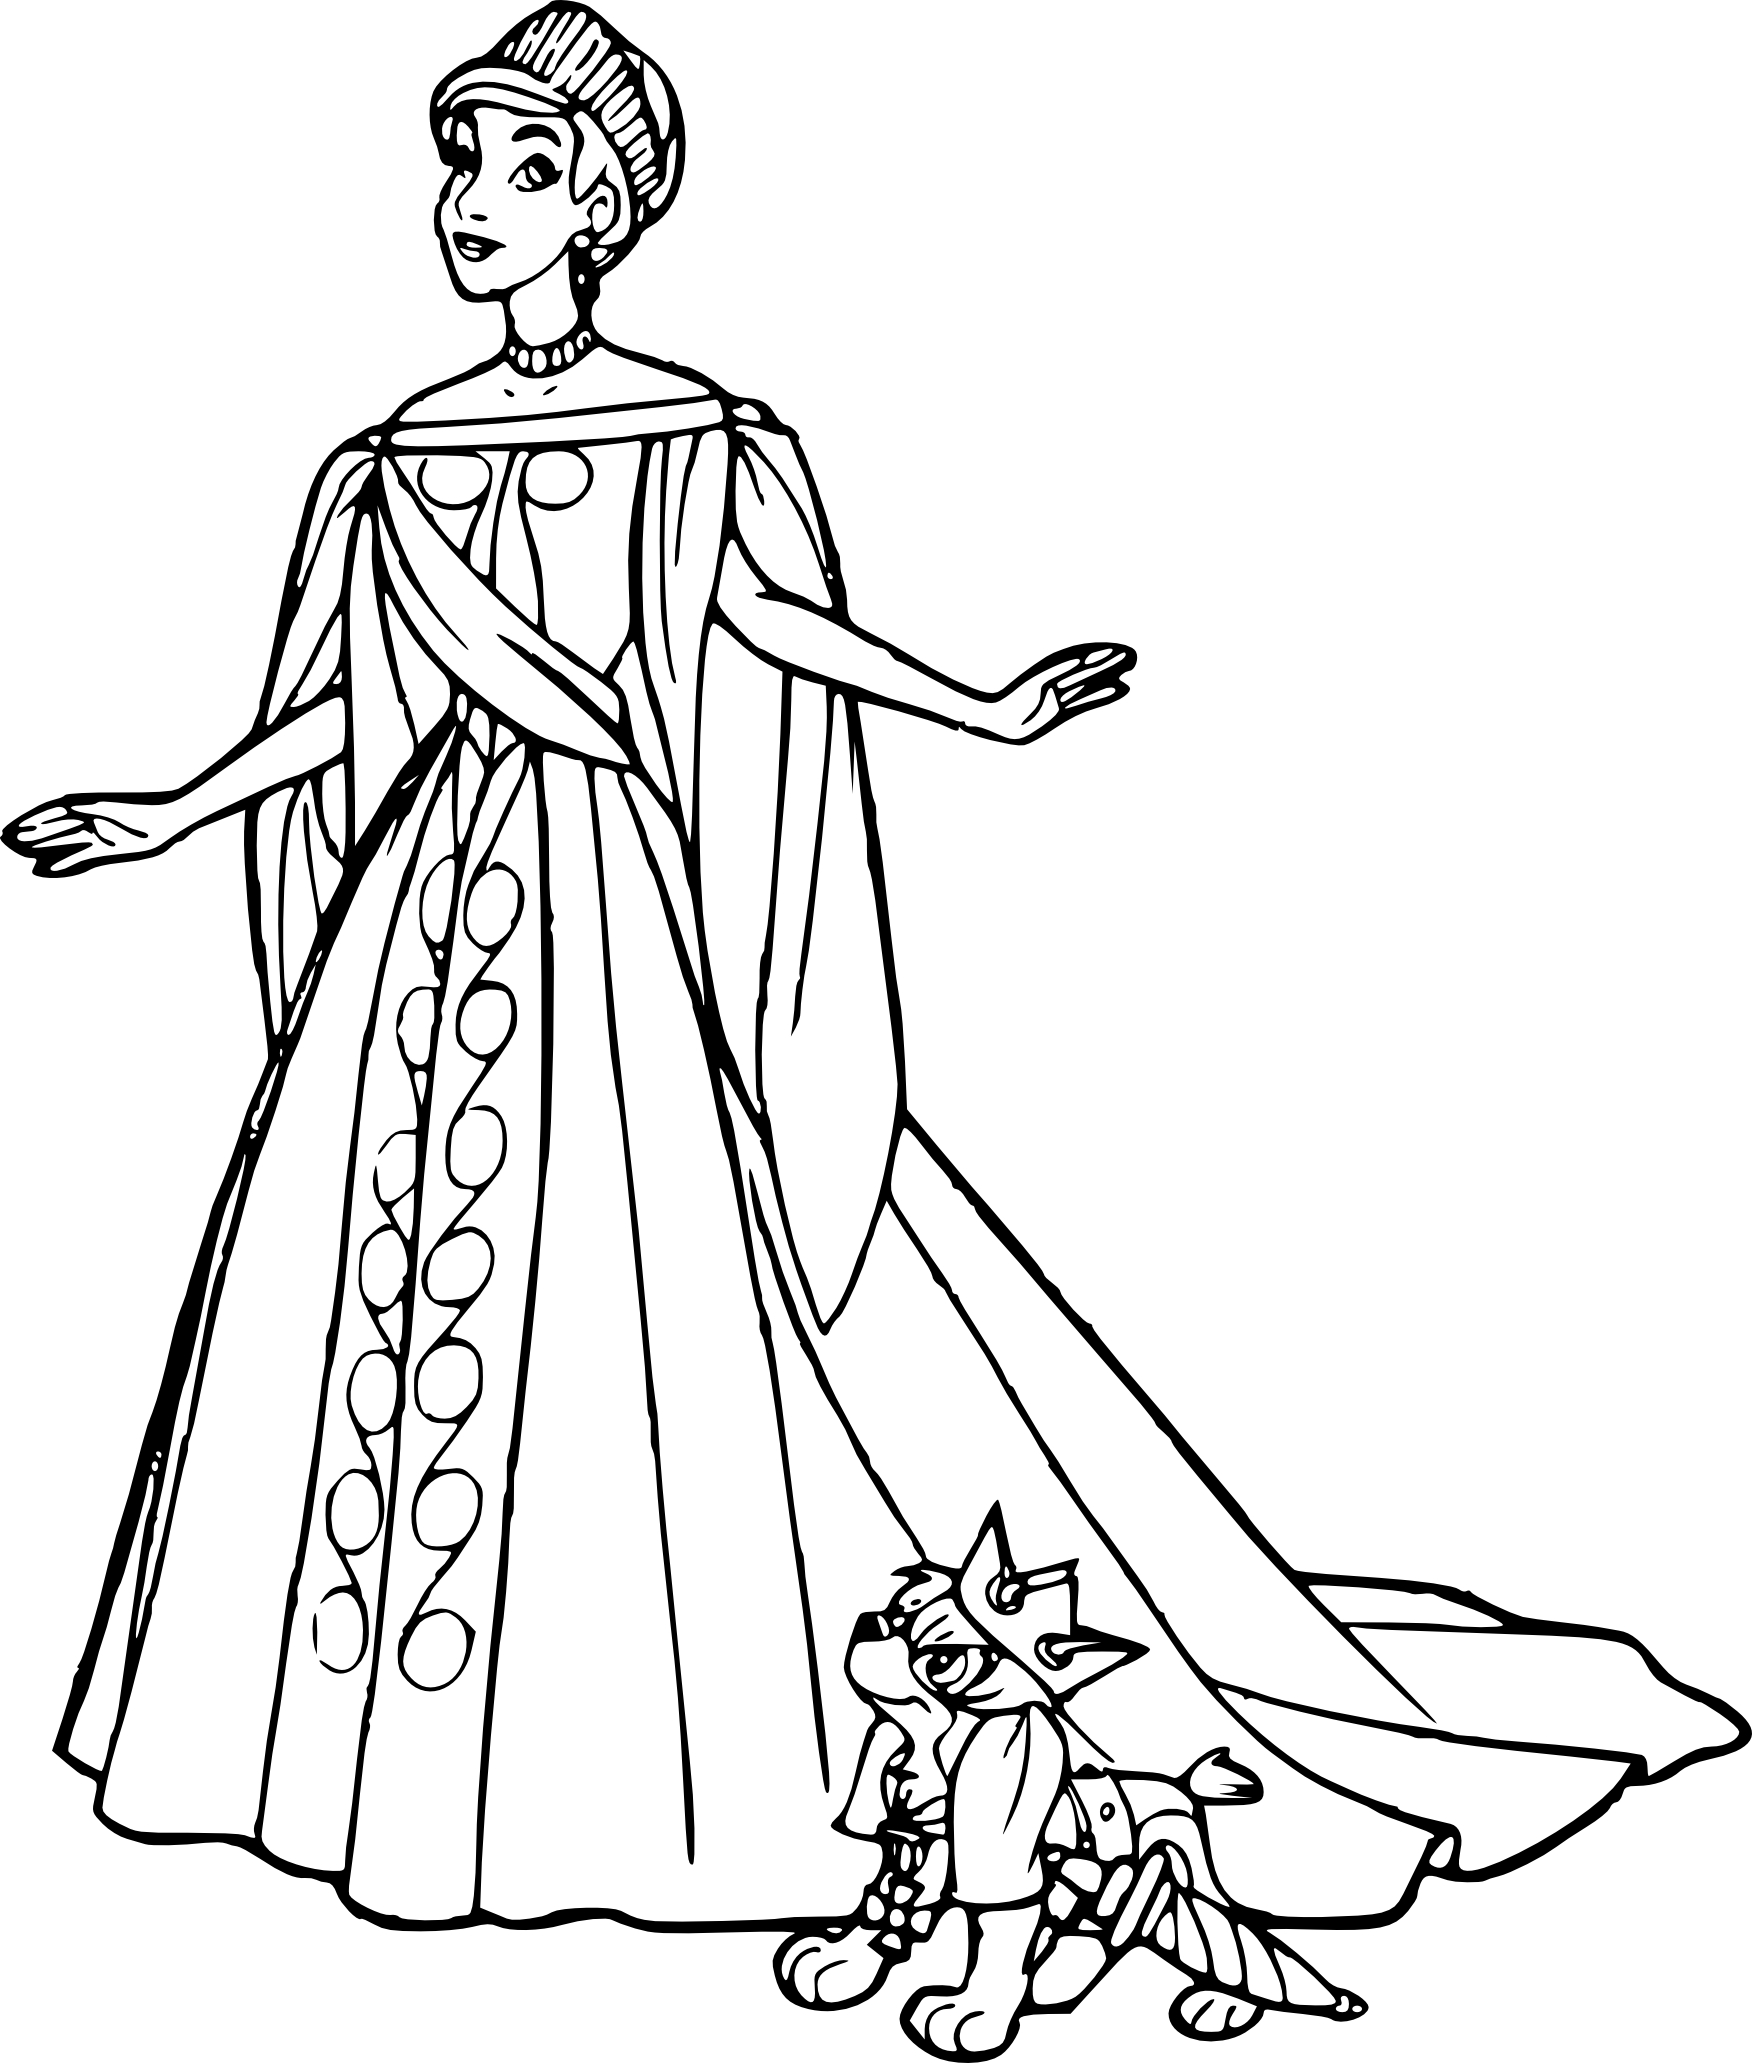 Princess Anastasia coloring page